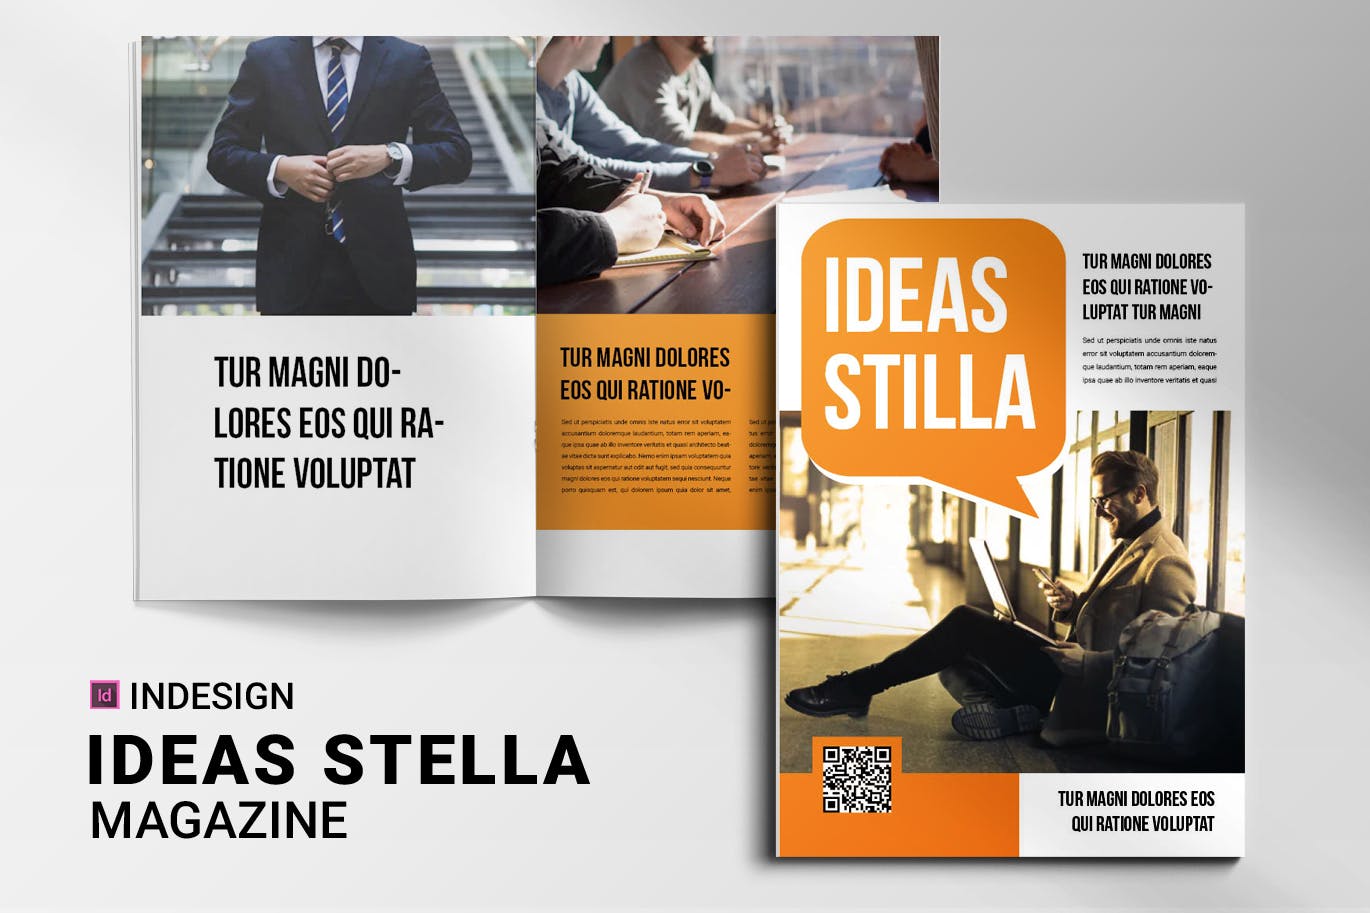 Ideas Stella - Magazine